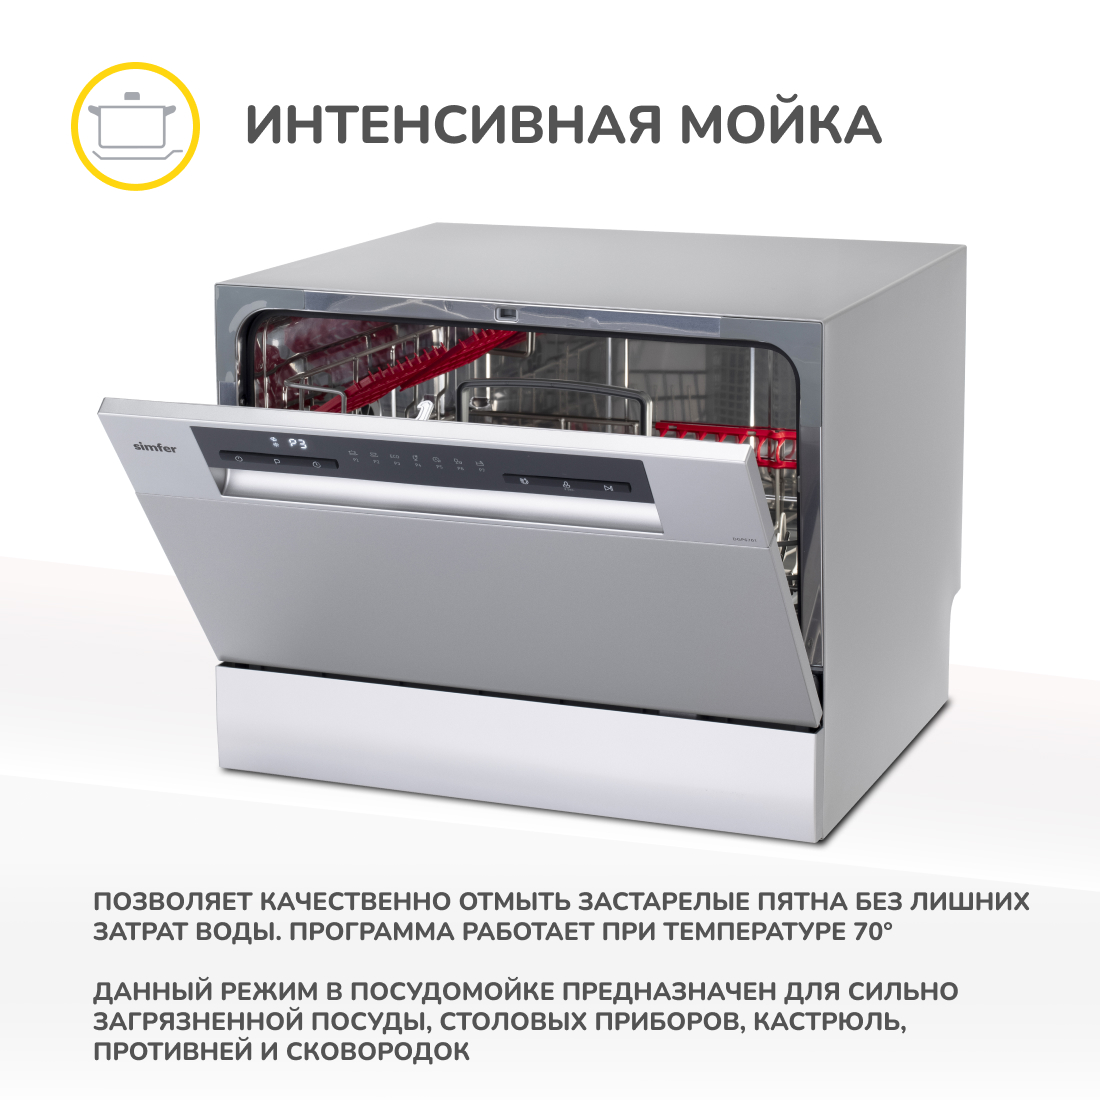 Настольная посудомоечная машина Simfer DGP6701, цвет серебристый - фото 4